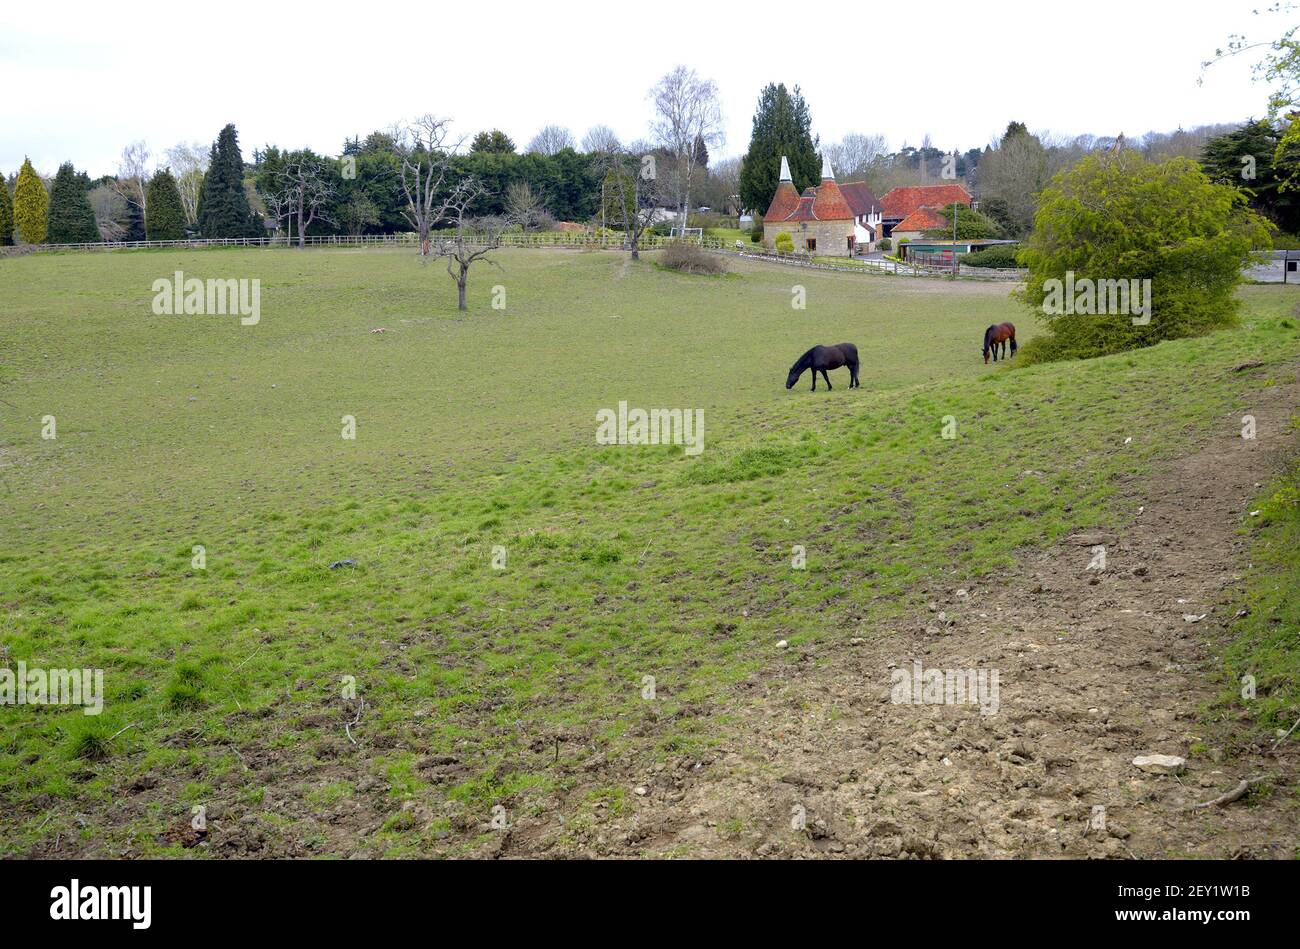 Loose Village, Kent, Royaume-Uni. 2 chevaux paître dans un enclos à côté d'une ancienne maison d'oast. Banque D'Images